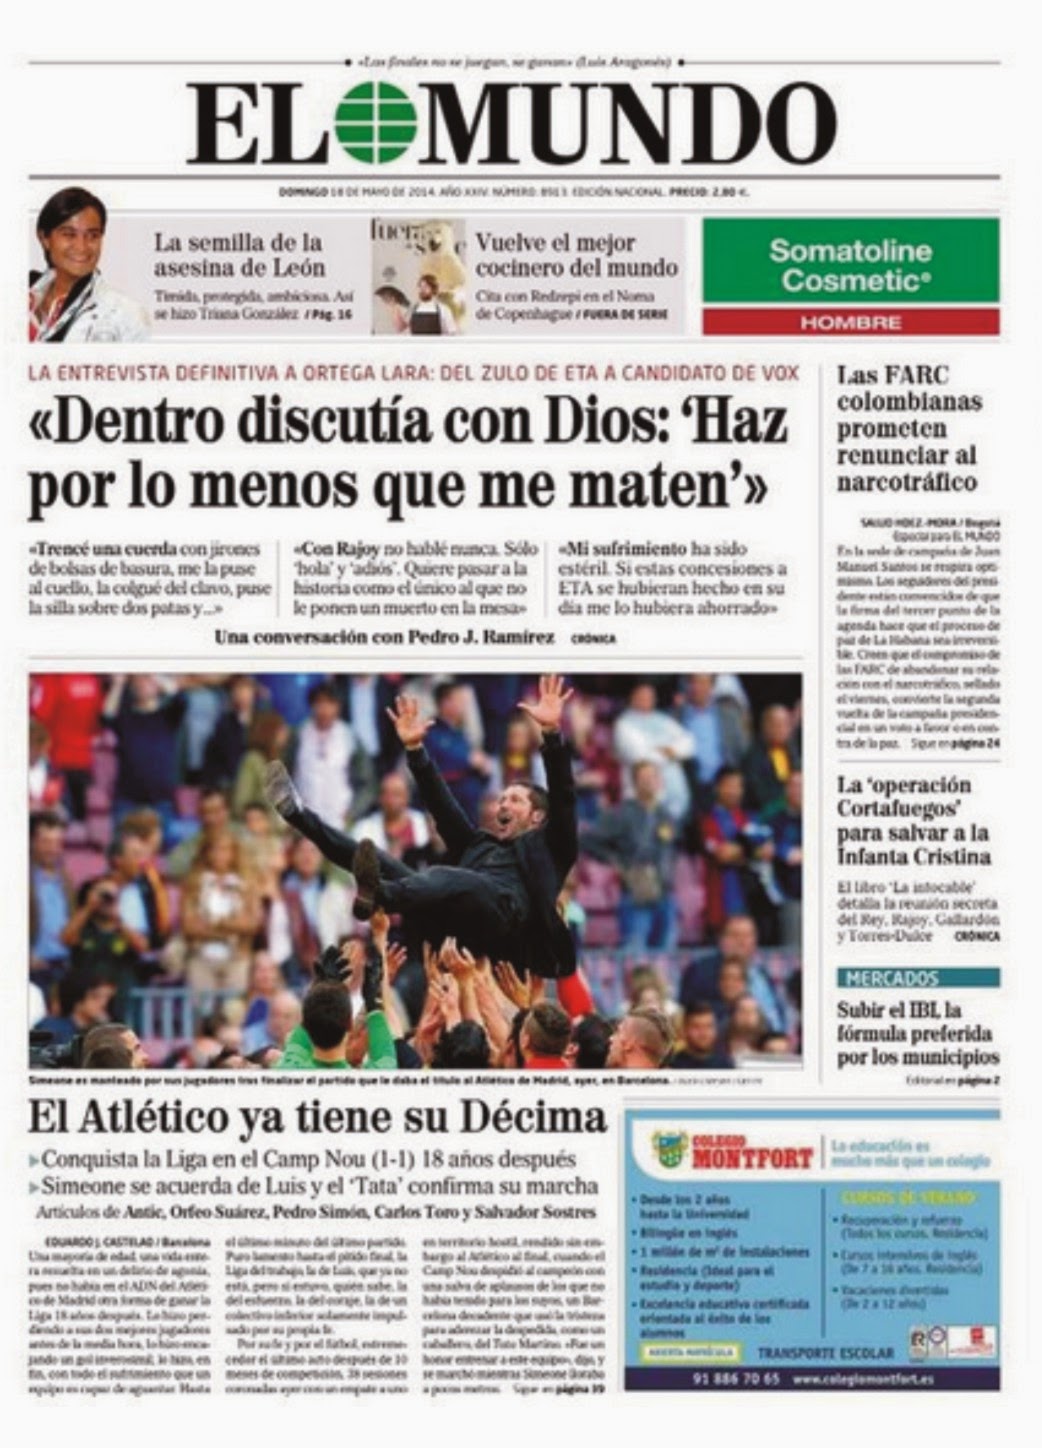 LA PELOTA NO DOBLA: Atlético de Madrid campeón de Liga en la tapa de los diarios.1042 x 1448